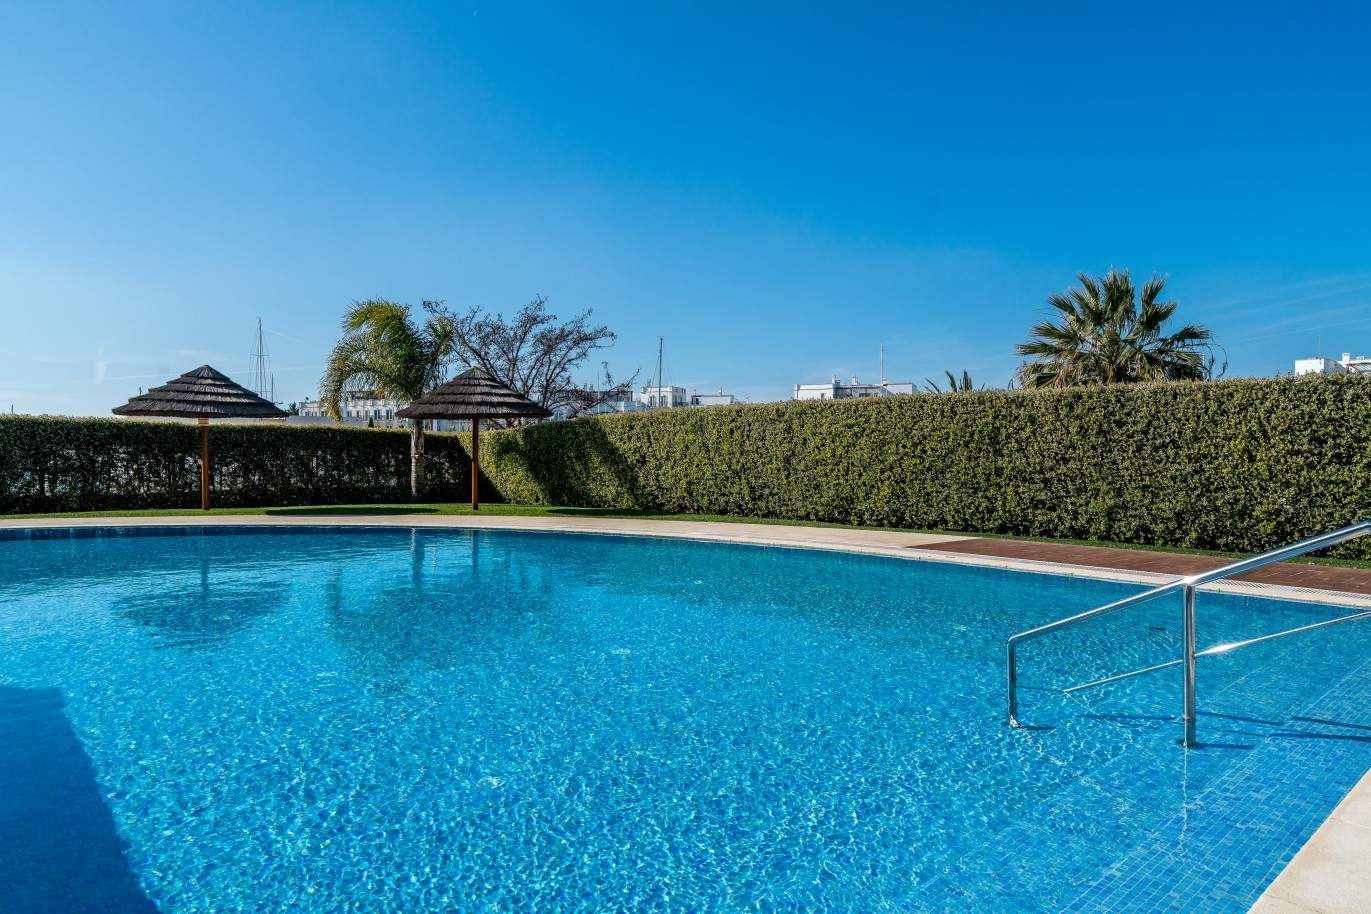 Wohnung zum Verkauf mit Schwimmbad, nah am Strand, Marina Vilamoura, Algarve, Portugal_74094